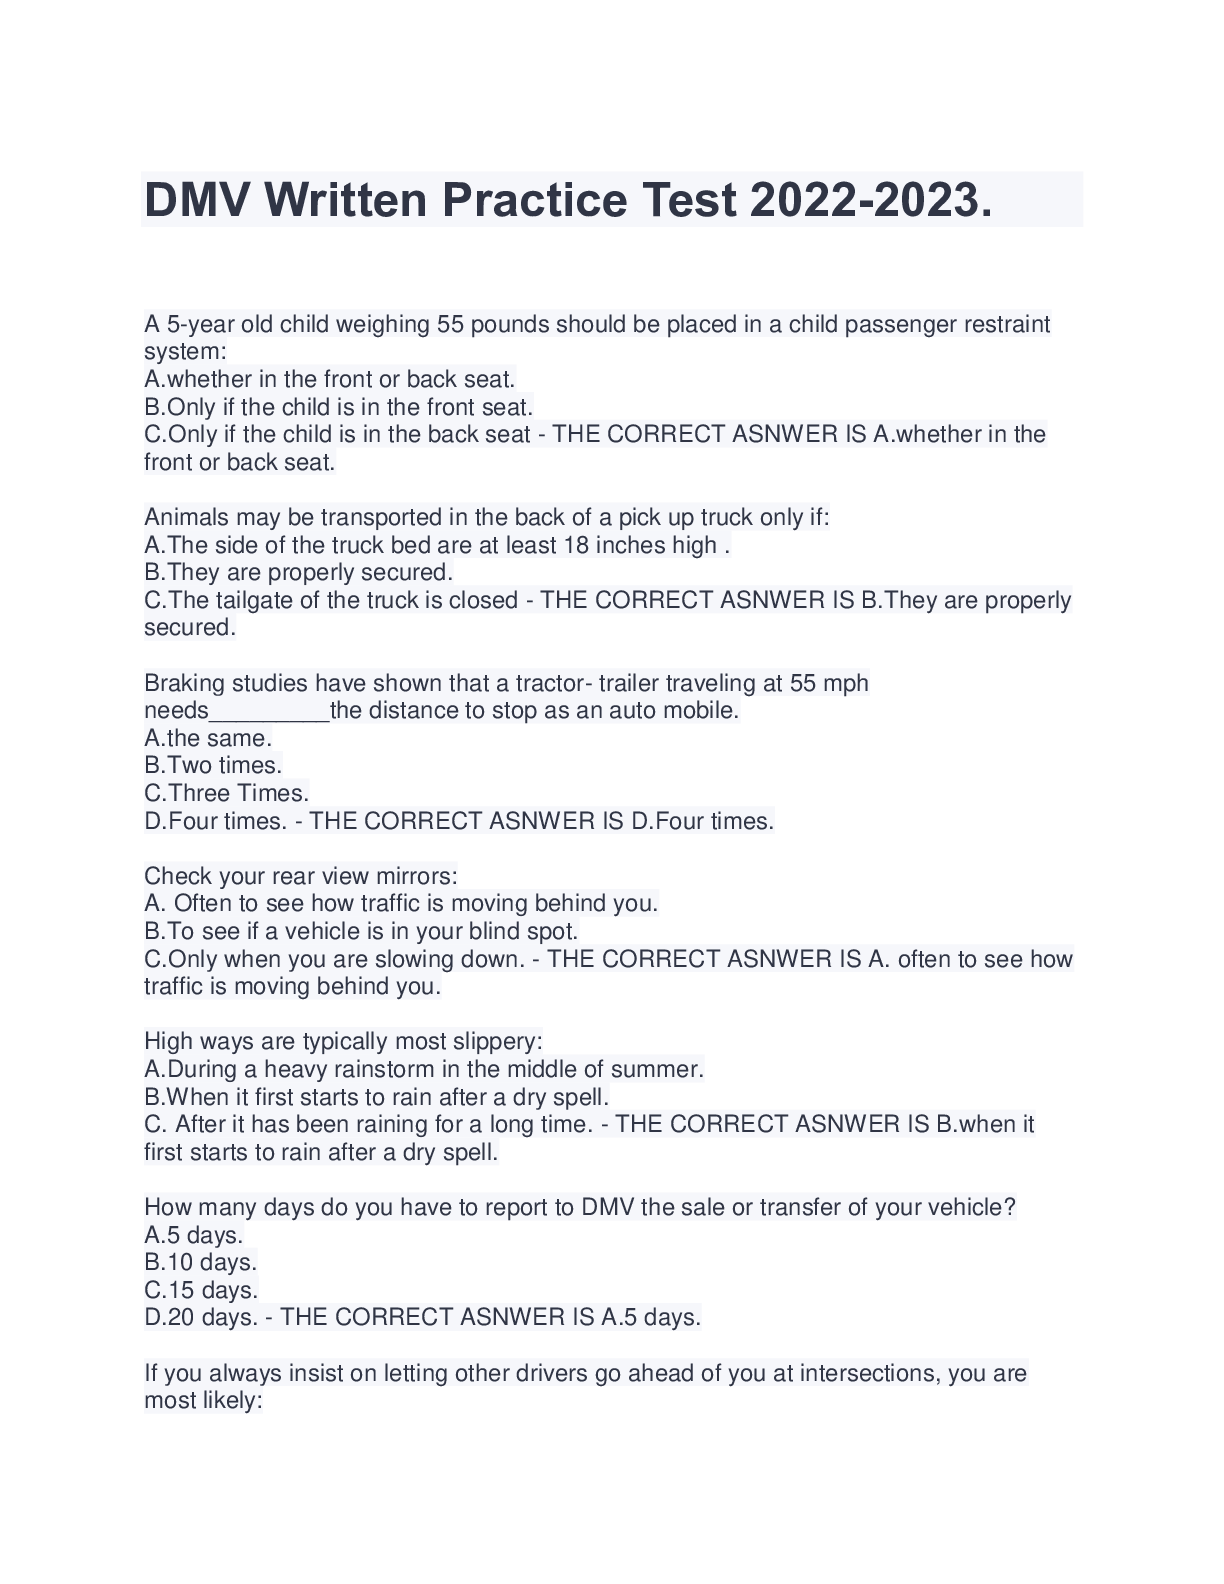 dmv-written-practice-test-2022-2023